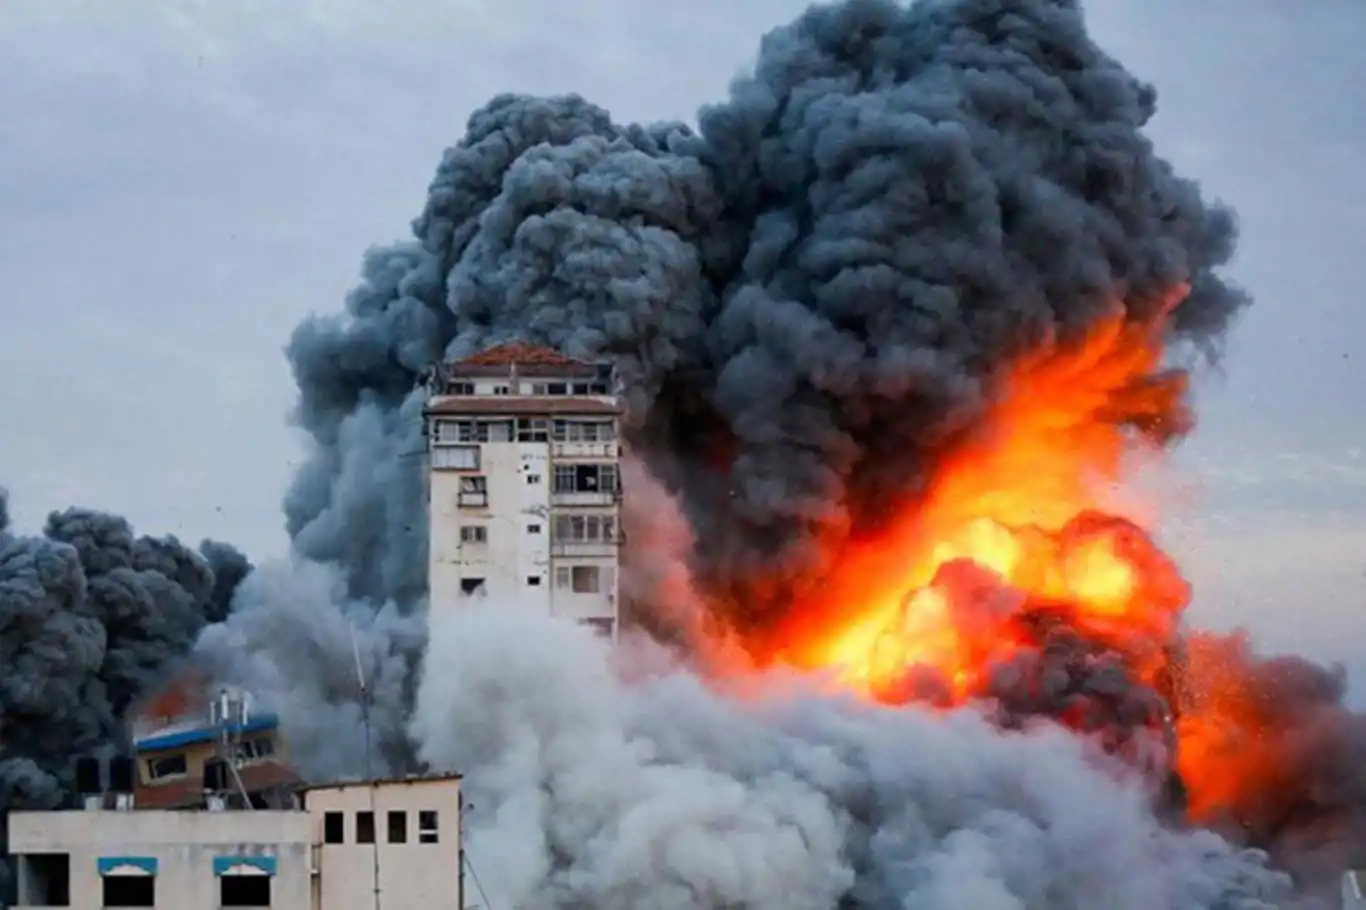 Siyonist rejim, Gazze'ye atılan bomba sayısını açıklamayı reddetti